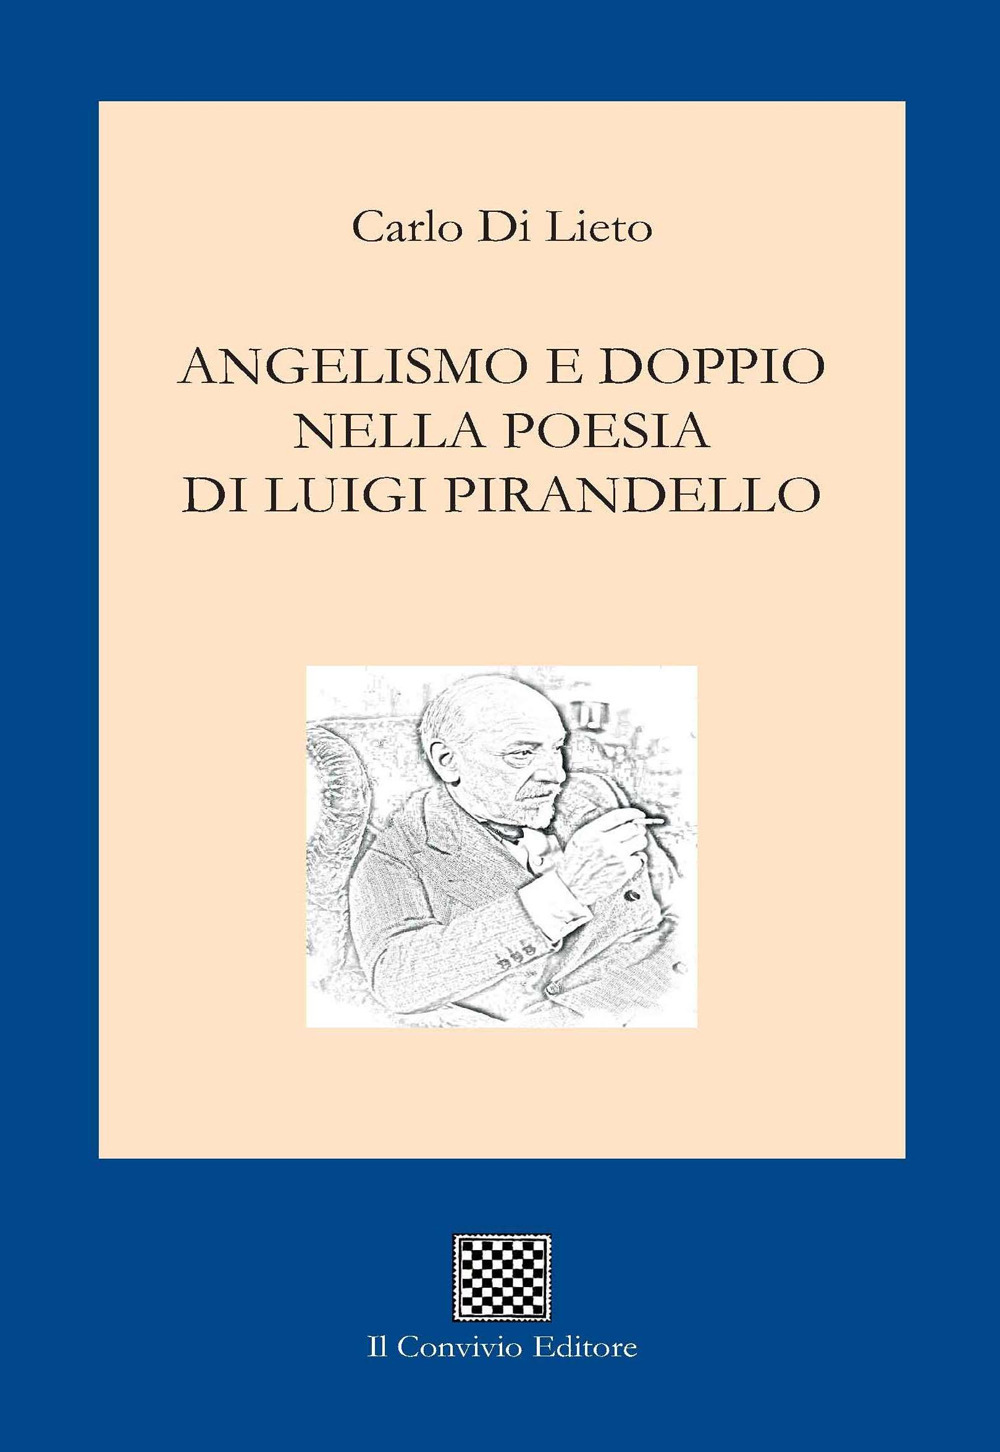 Angelismo e doppio nella poesia di Luigi Pirandello